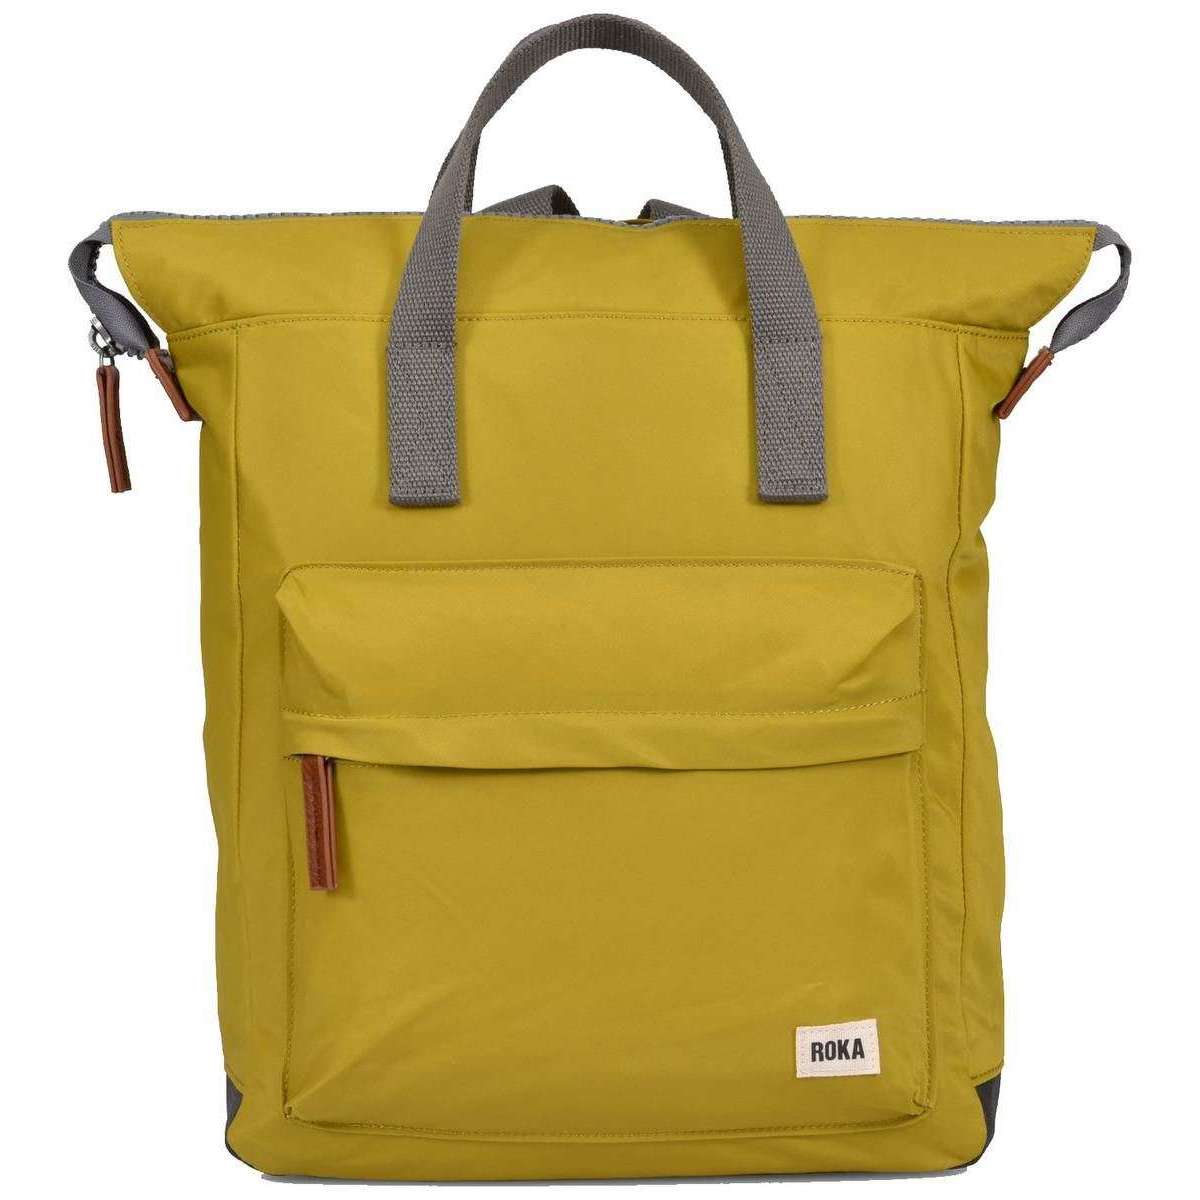 Roka Bantry B Medium Sustainable Nylon Backpack - Pea Green